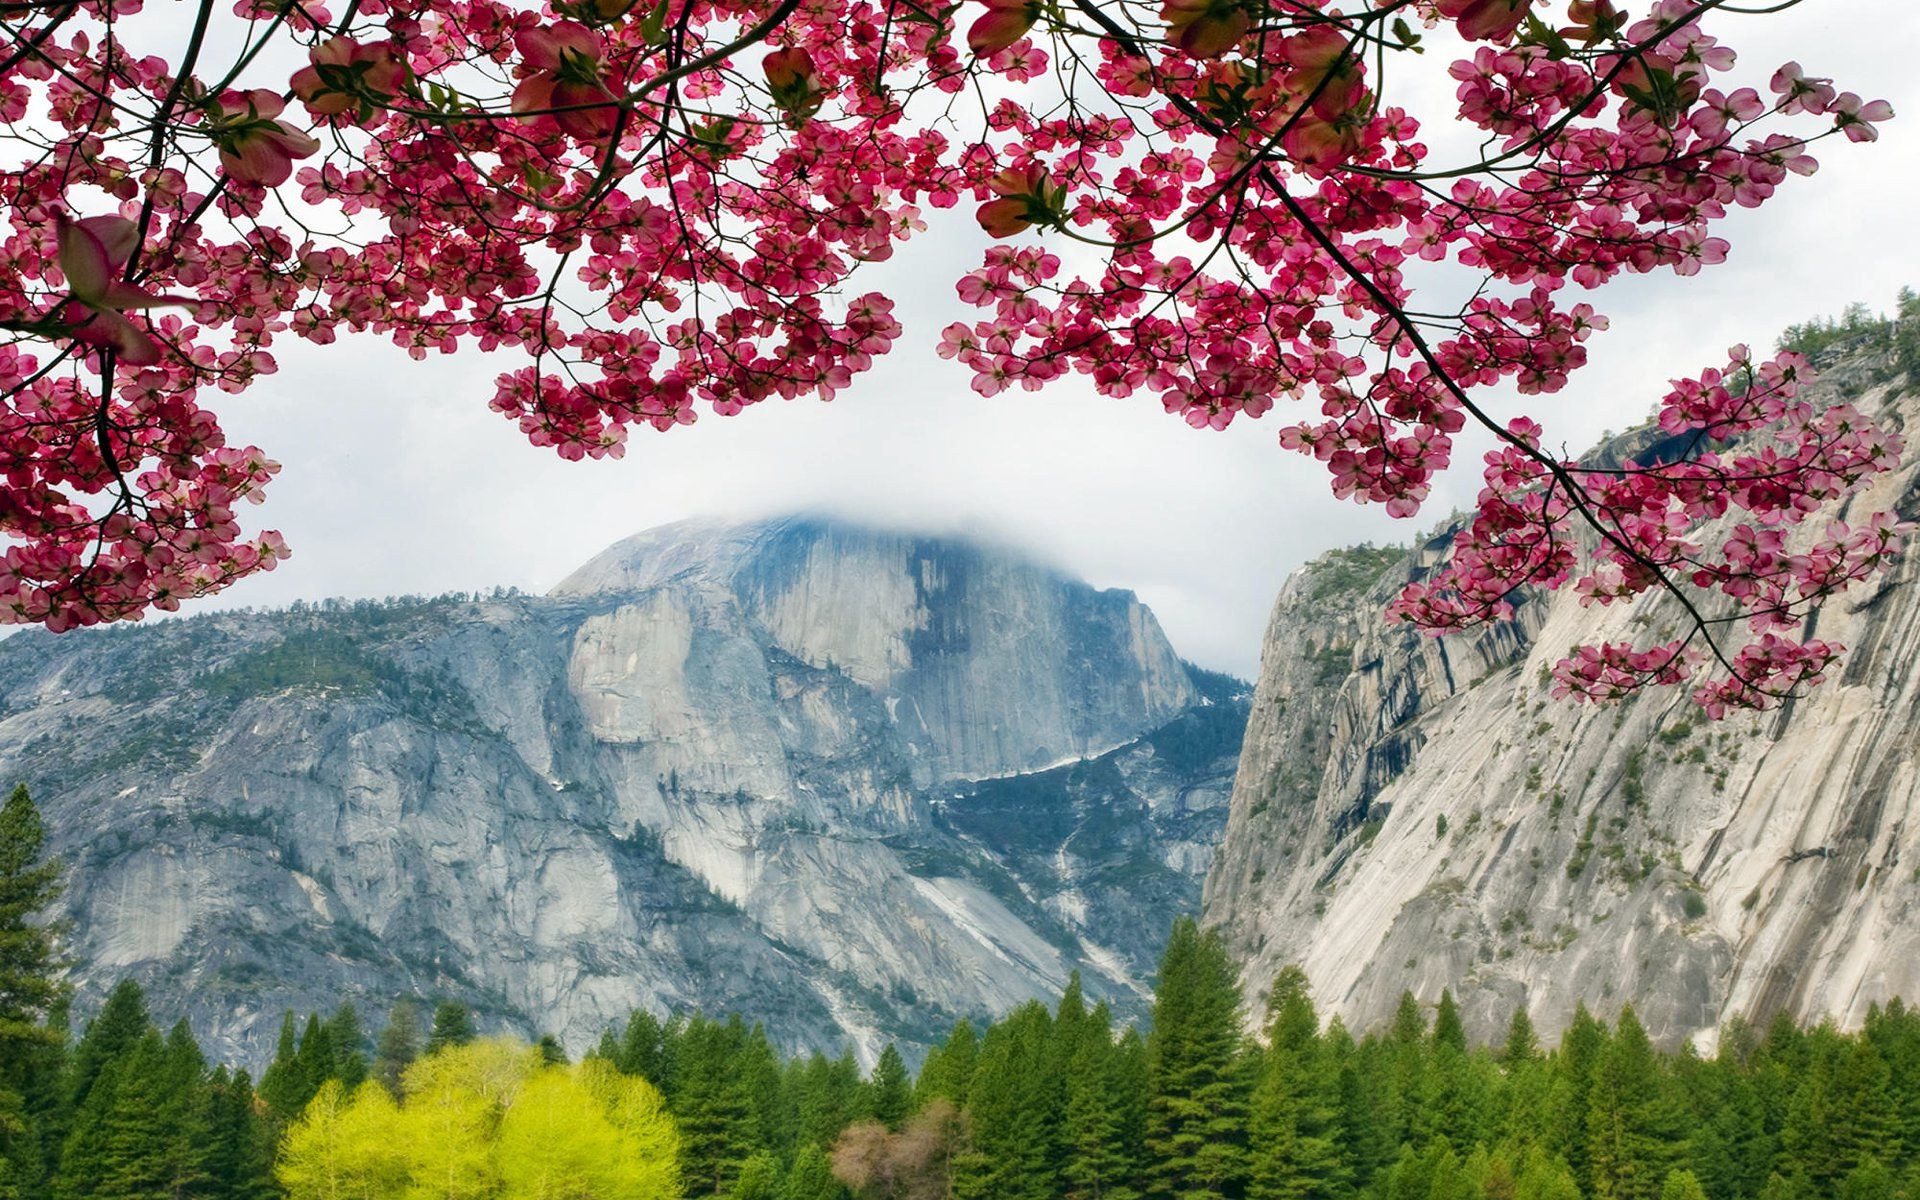 Springtime in Yosemite, California